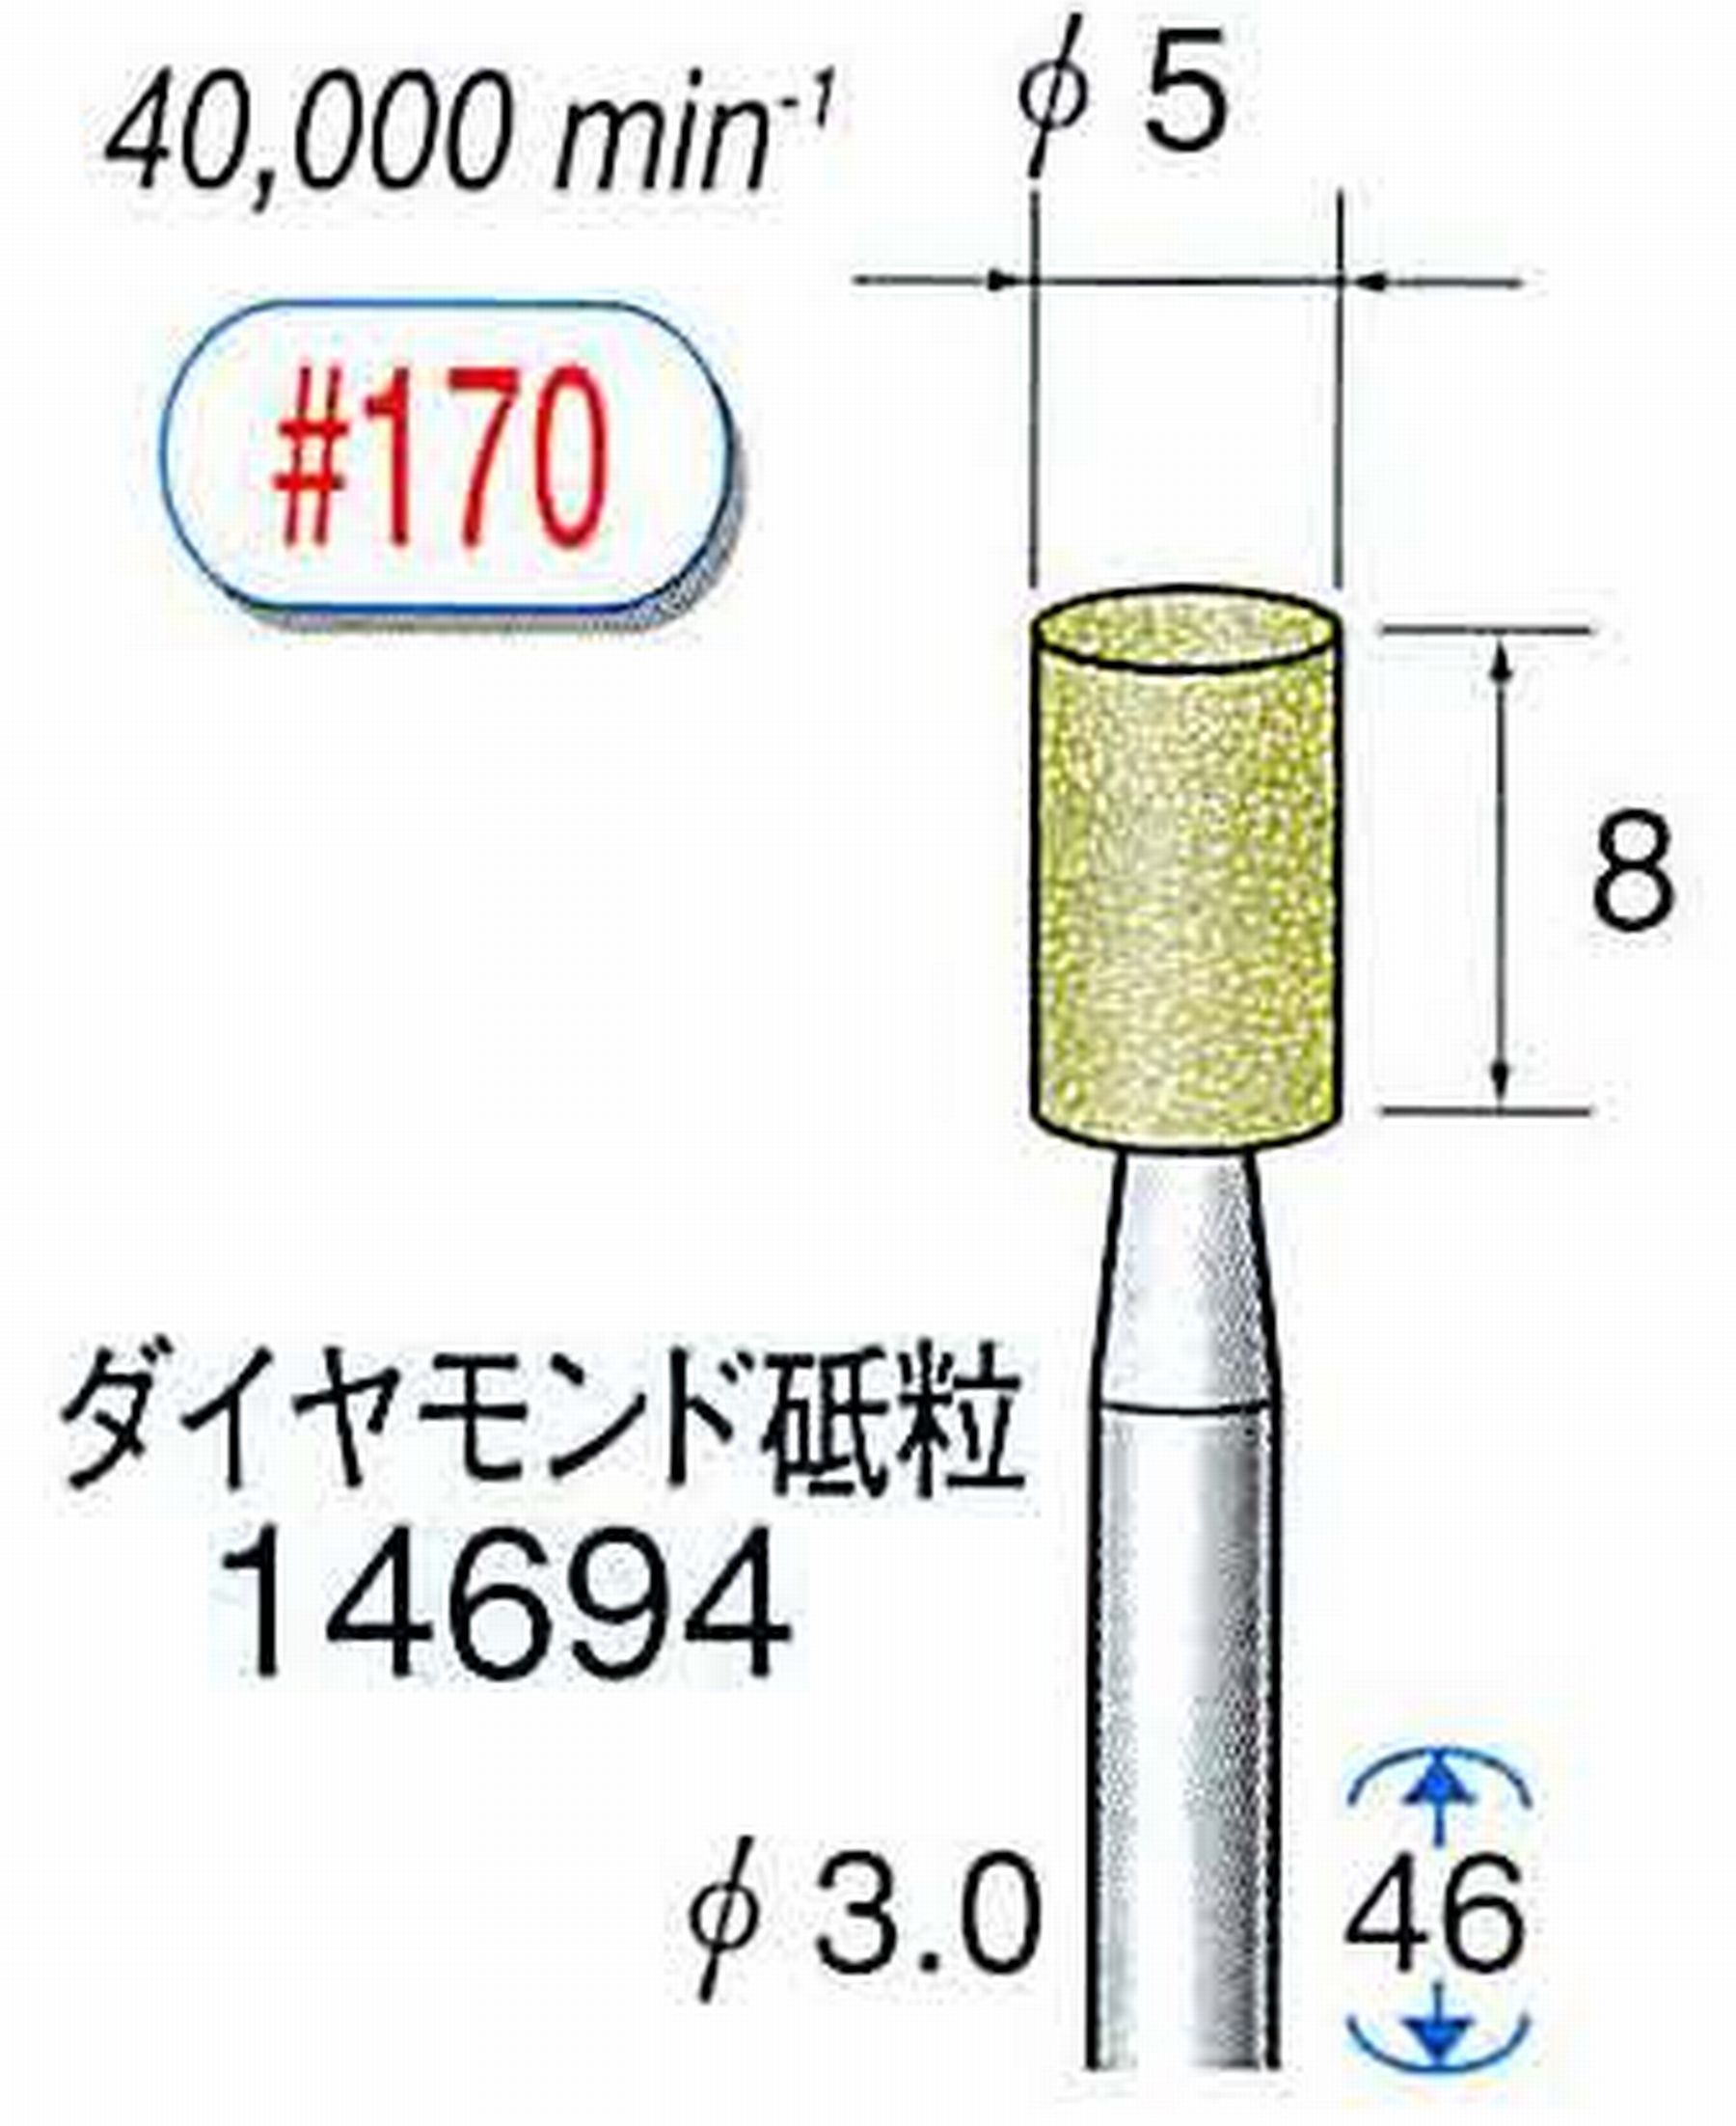 ナカニシ/NAKANISHI セラミックダイヤモンド砥石 ダイヤモンド砥粒 軸径(シャンク)φ3.0mm 14694